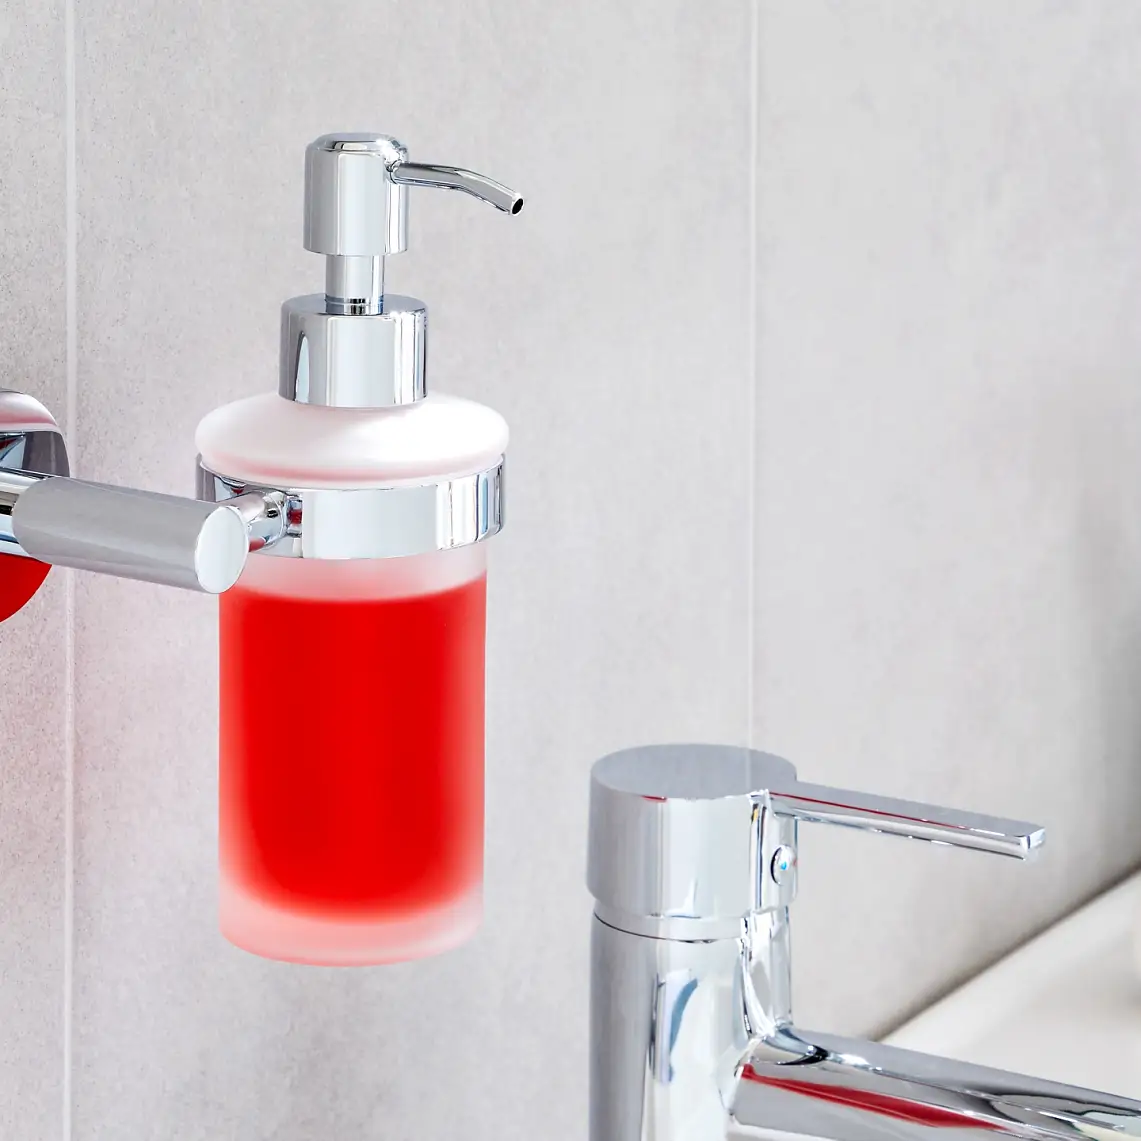 Inred ditt badrum med snygga tillbehör som gör att du kan förvara dina toalettartiklar med varje sak på sin plats.